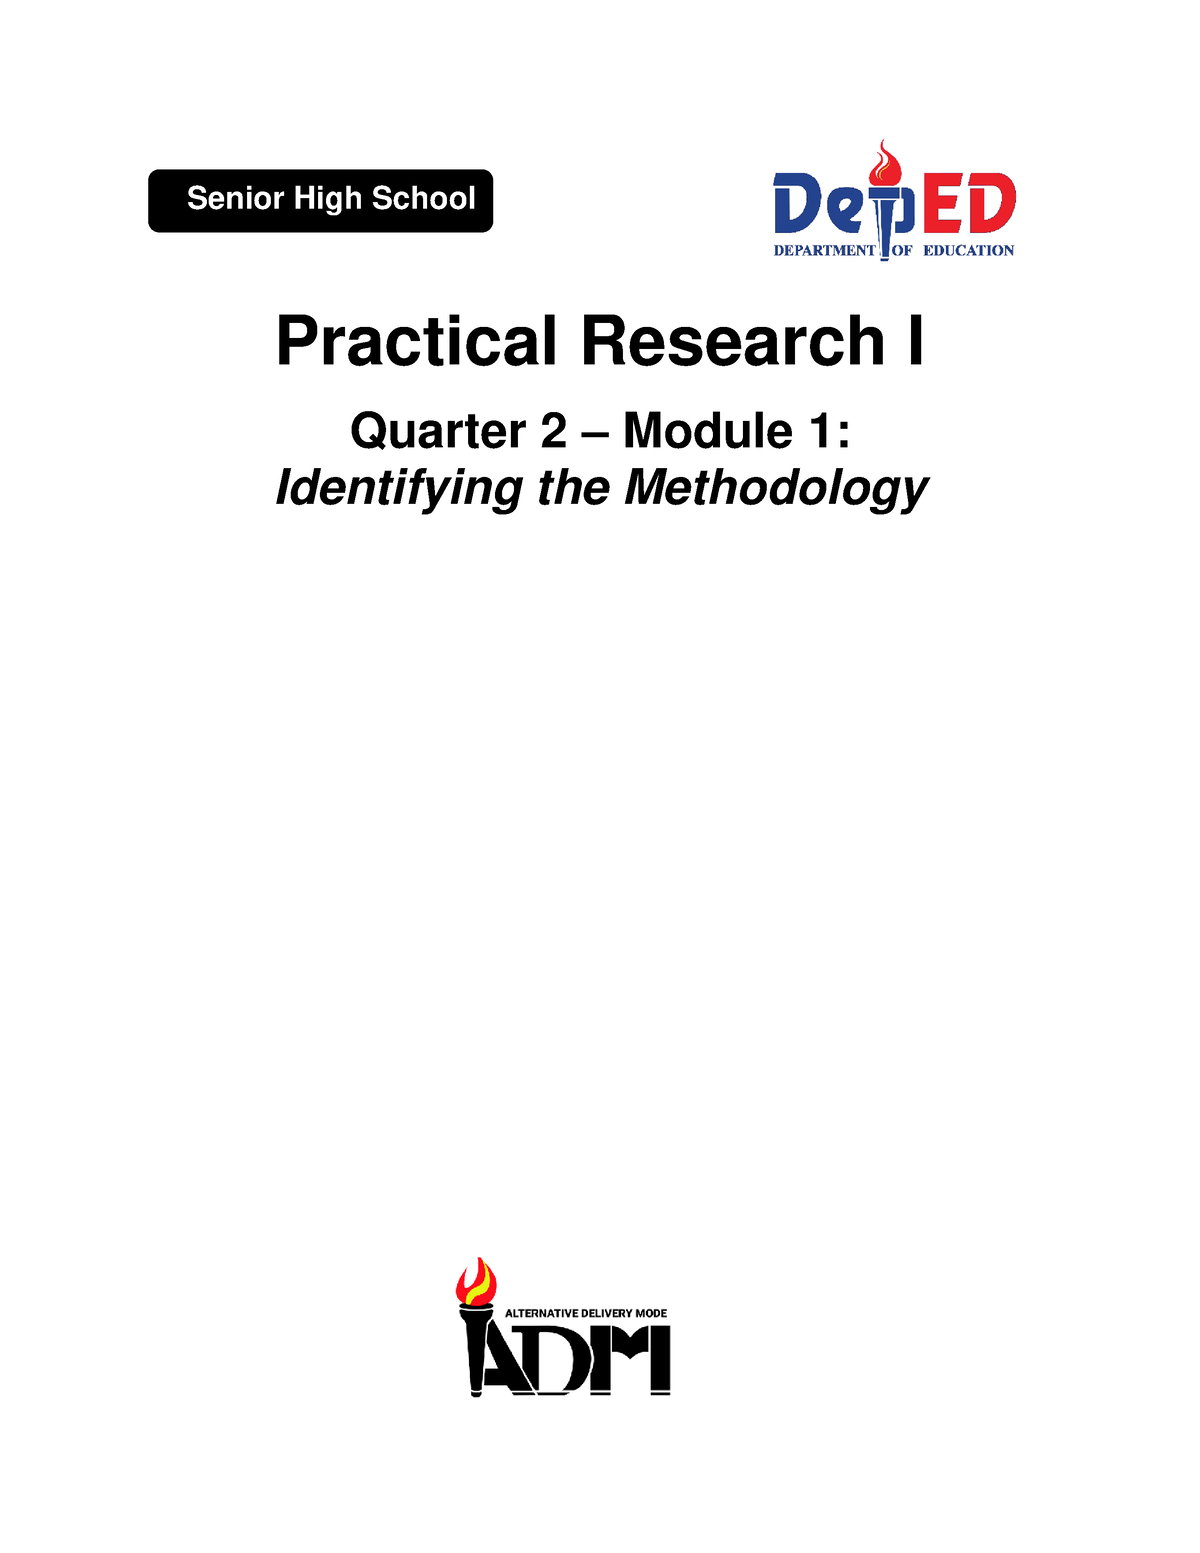 research 8 quarter 2 module 1